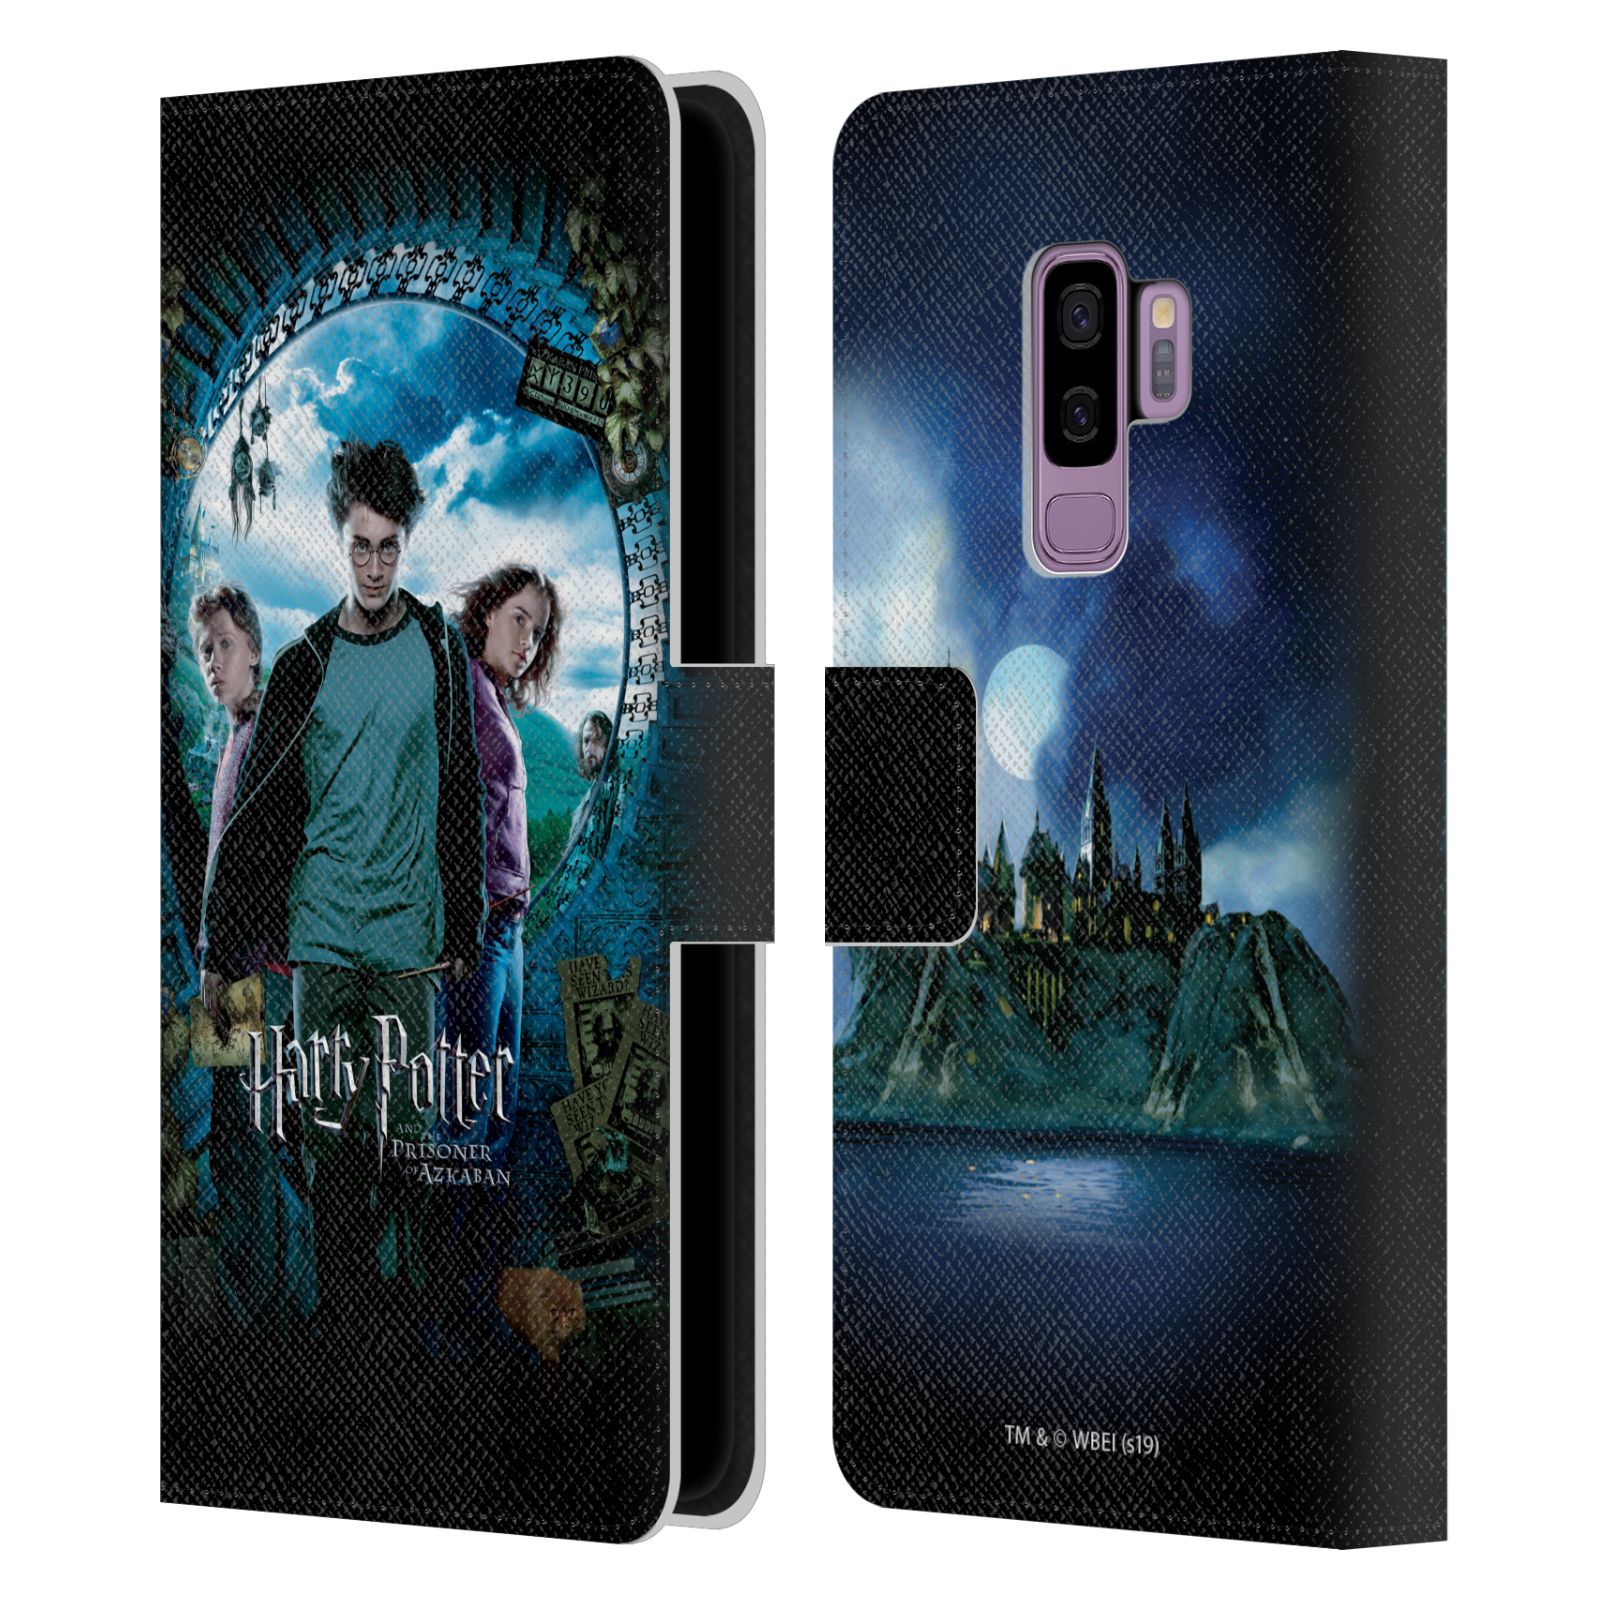 Pouzdro na mobil Samsung Galaxy S9+ / S9 PLUS - HEAD CASE - Harry Potter - Vězeň z Azkabanu